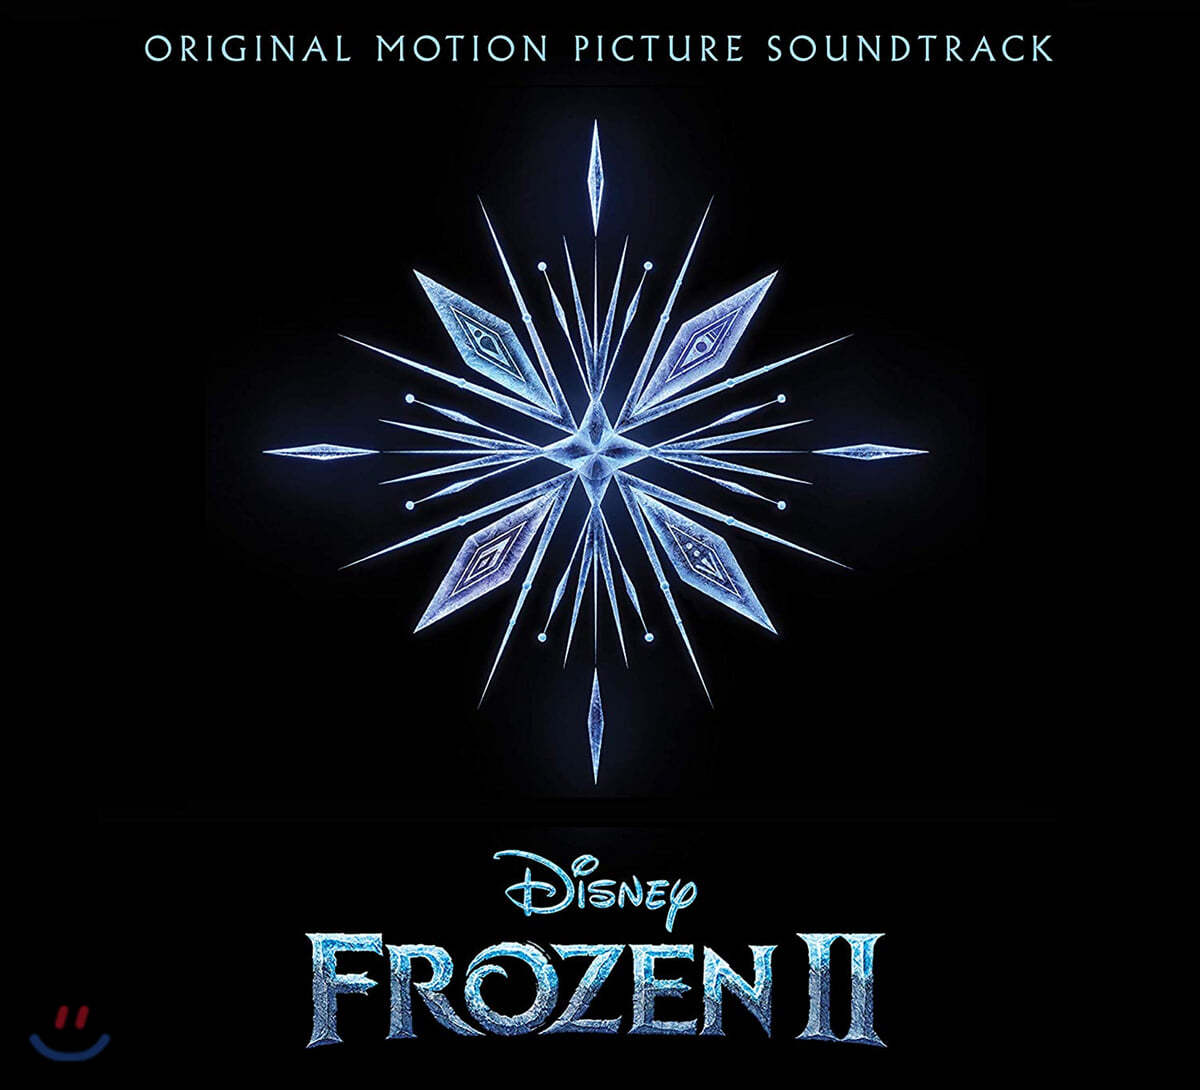 겨울왕국 2 애니메이션 음악 (Frozen 2 OST by Kristen Anderson-Lopez / Robert Lopez)